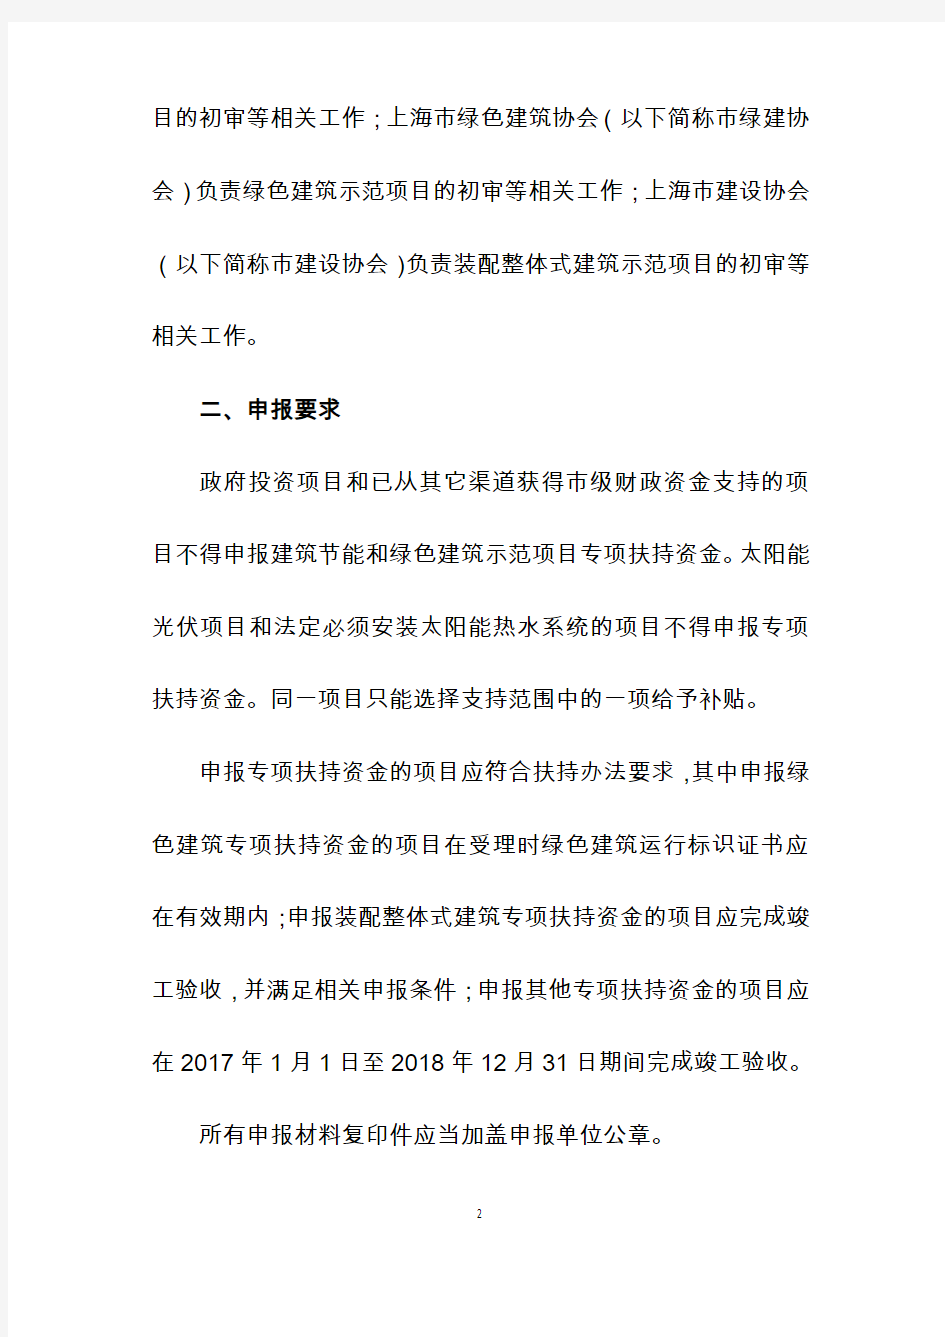 2018年上海建筑节能和绿色建筑示范项目